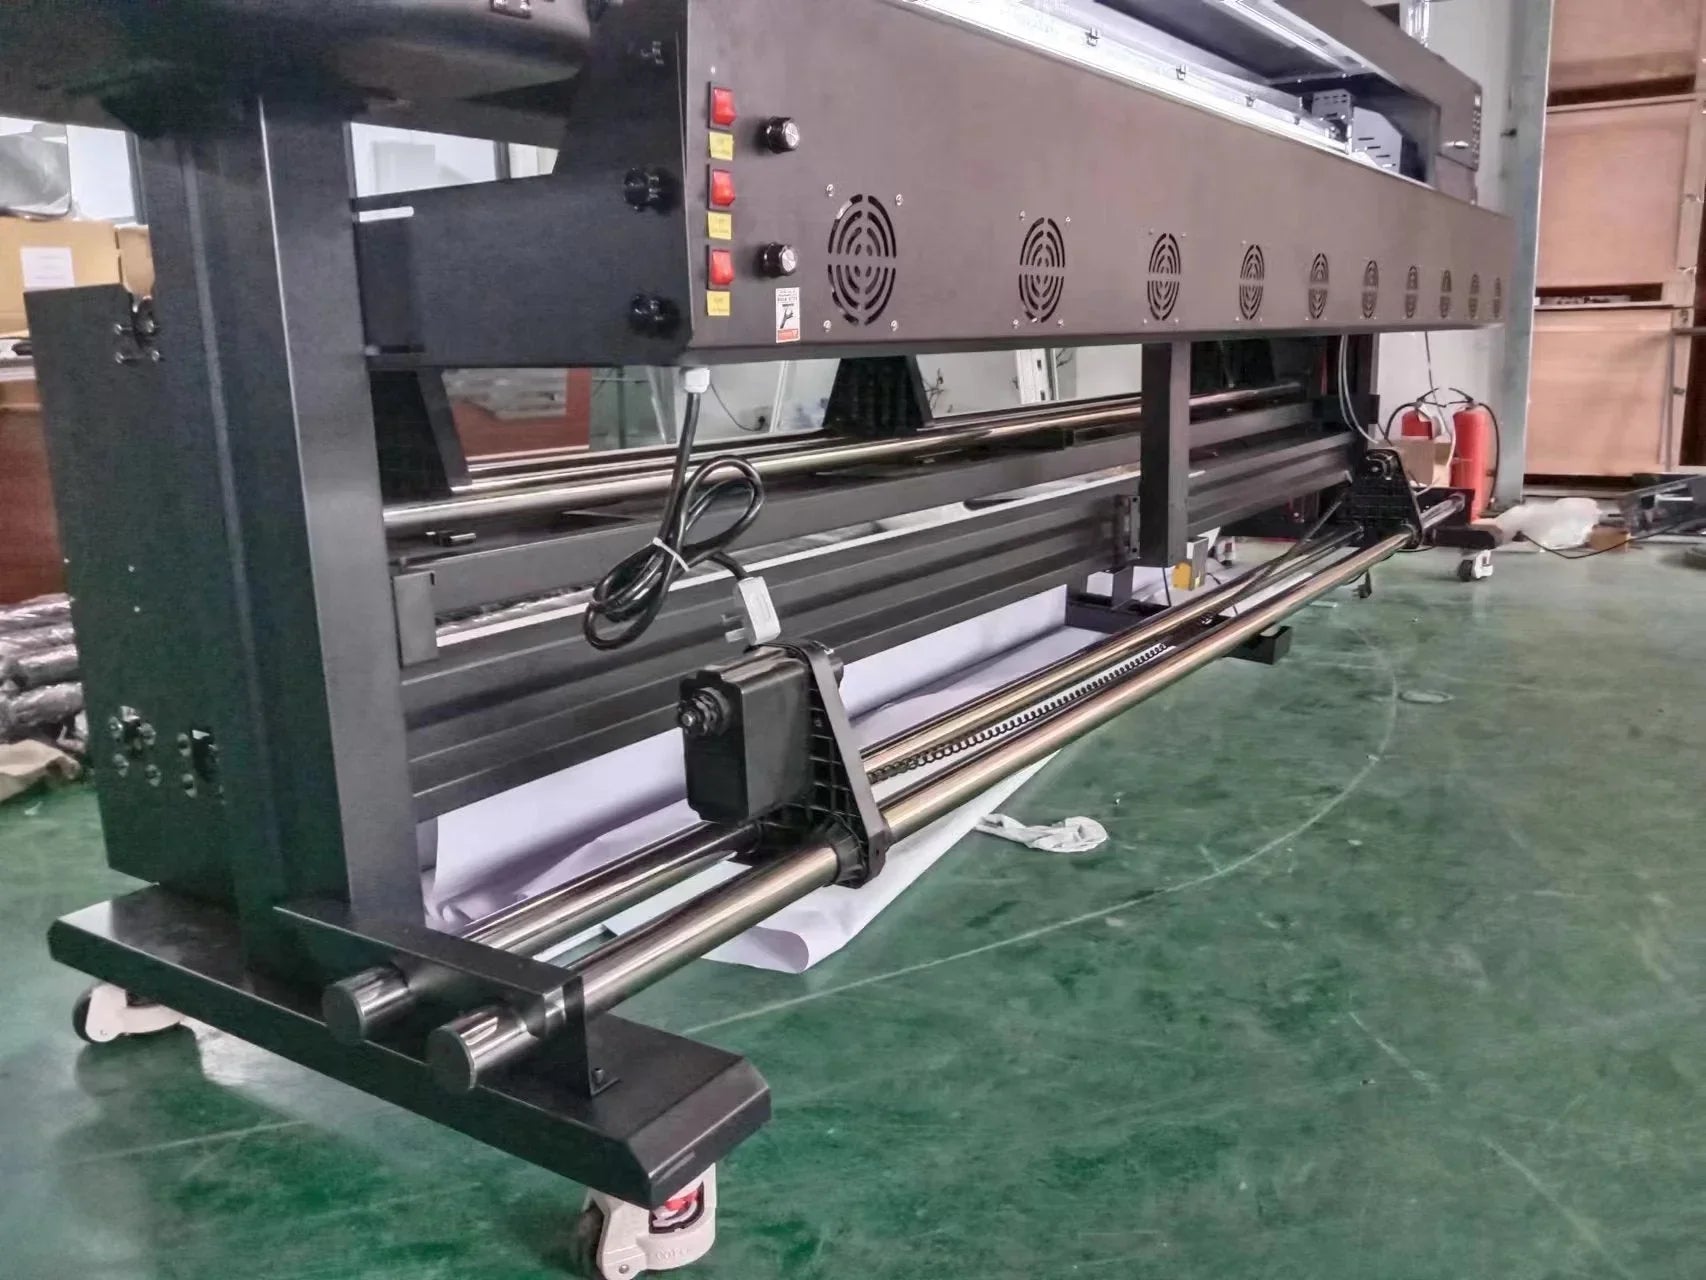  Ploter de impresión Eco 3.2 metros de ancho cabezal epson i3200E